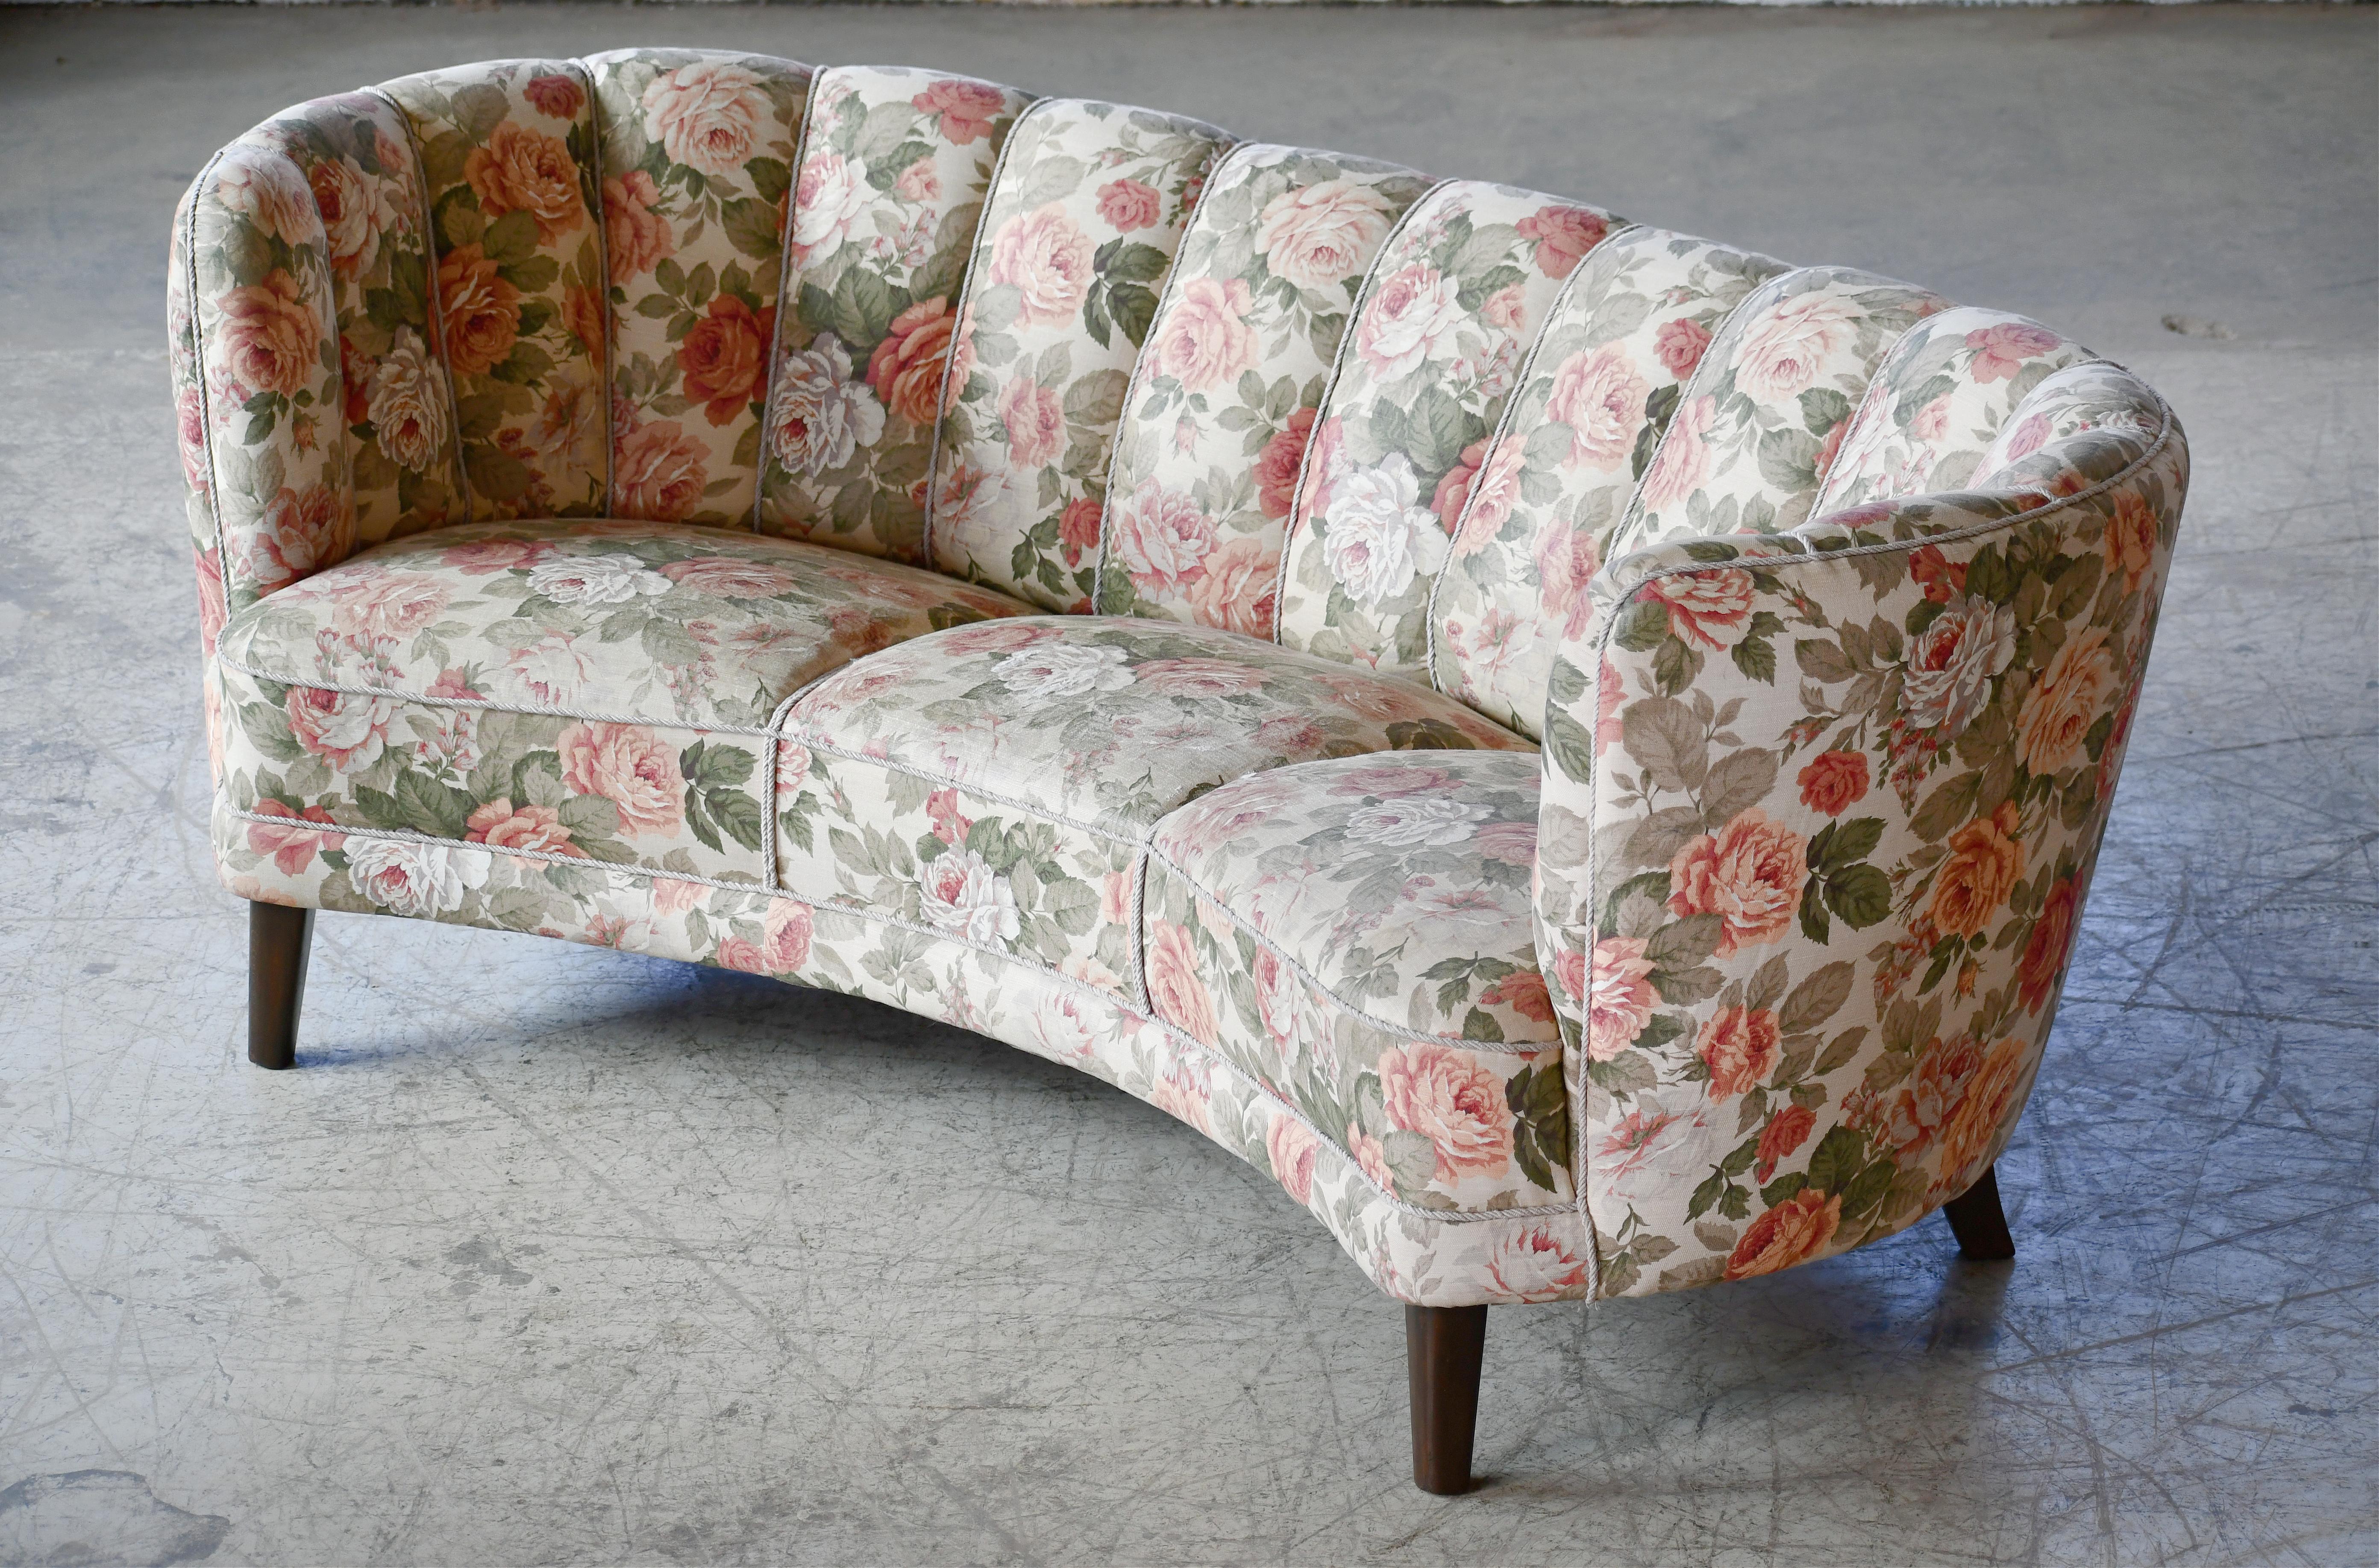 Magnifique et très élégant canapé trois places incurvé de grande taille des années 1940 avec dossier cannelé. Le canapé est équipé de ressorts dans l'assise et le dossier et le cadre en bois de hêtre est solide et robuste. Le tissu de laine